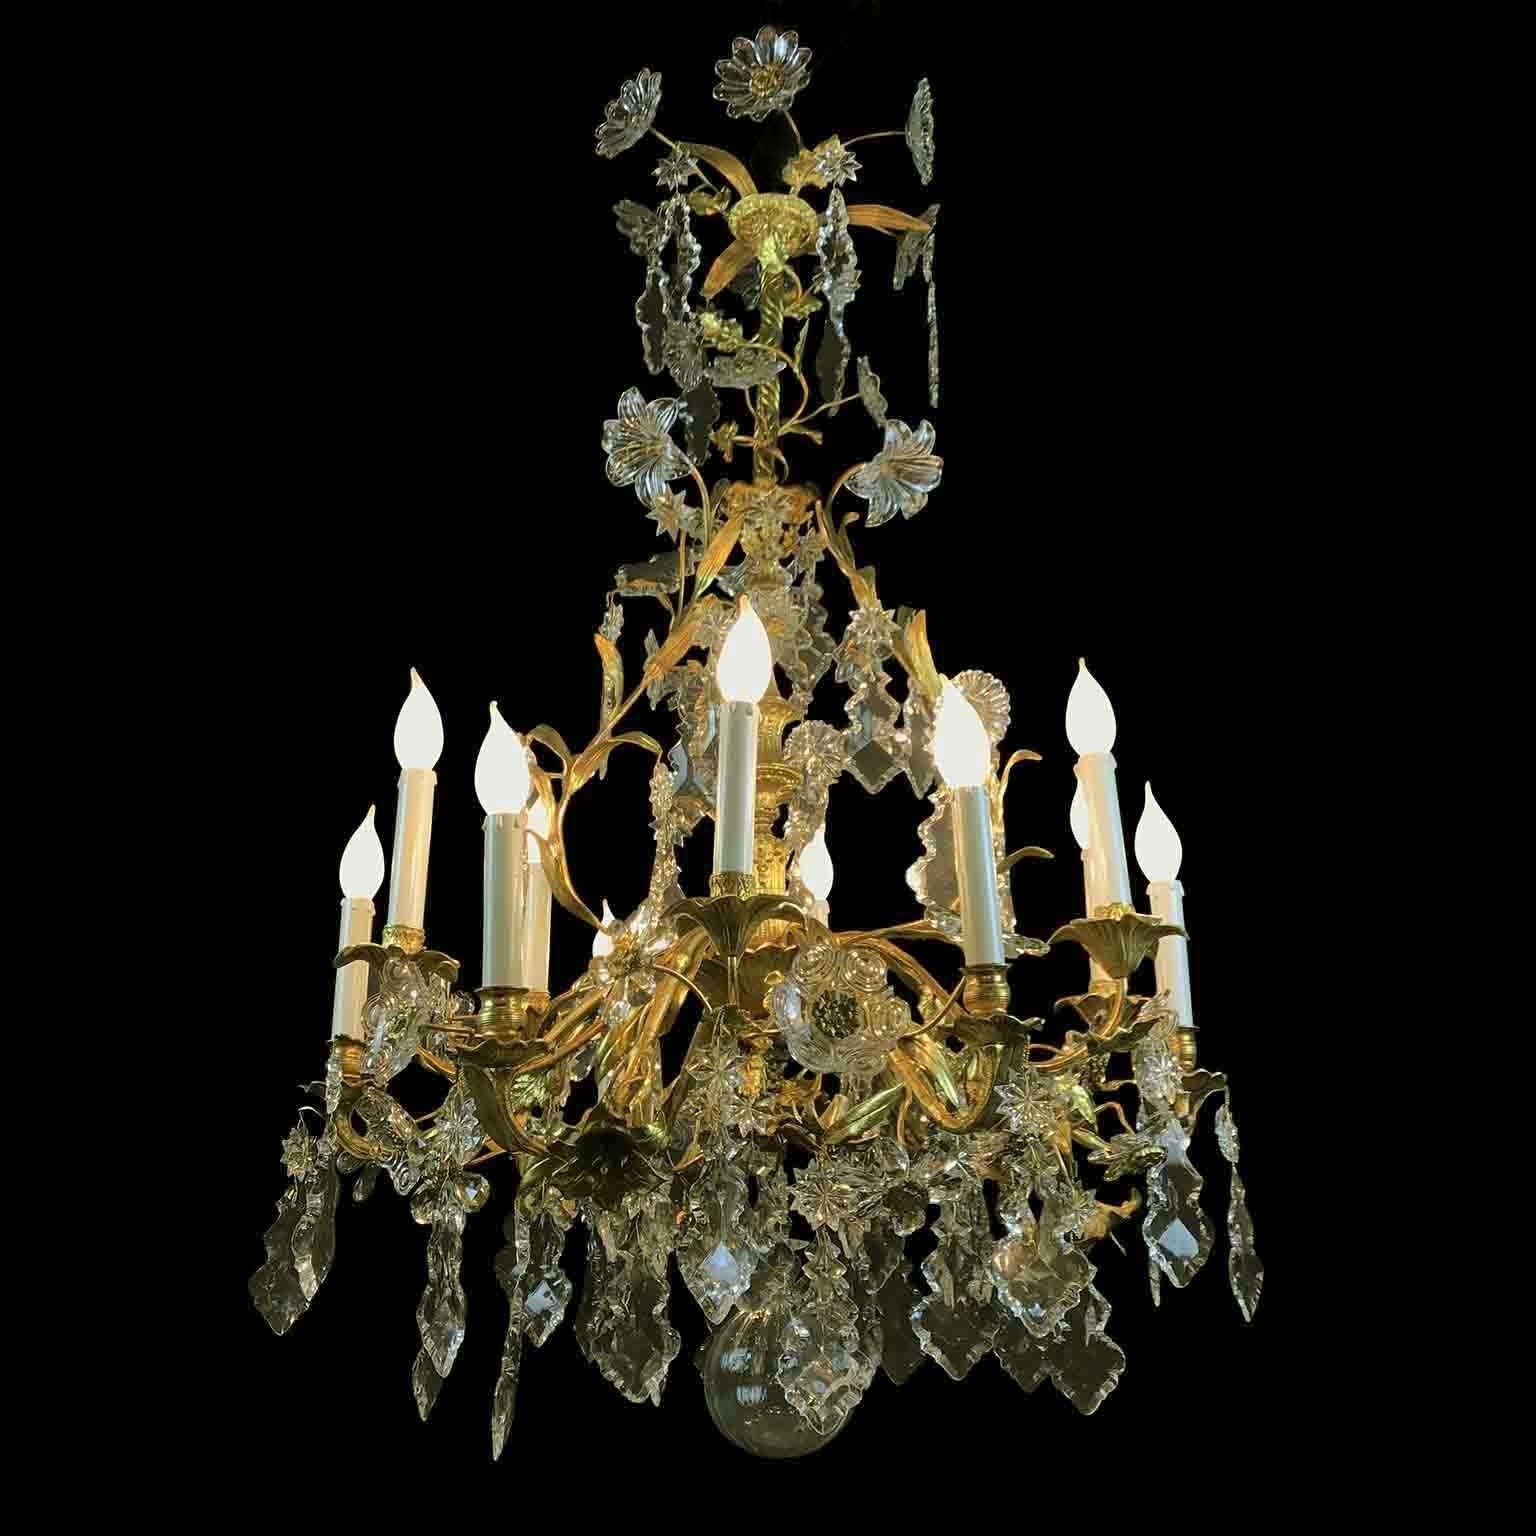 Exceptionnel lustre en bronze doré au feu et cristal d'origine française, une suspension à deux niveaux de douze lumières datant d'environ 1870, née pour brûler des bougies, modifiée pour devenir électrique, avec un cadre unique de branches et de